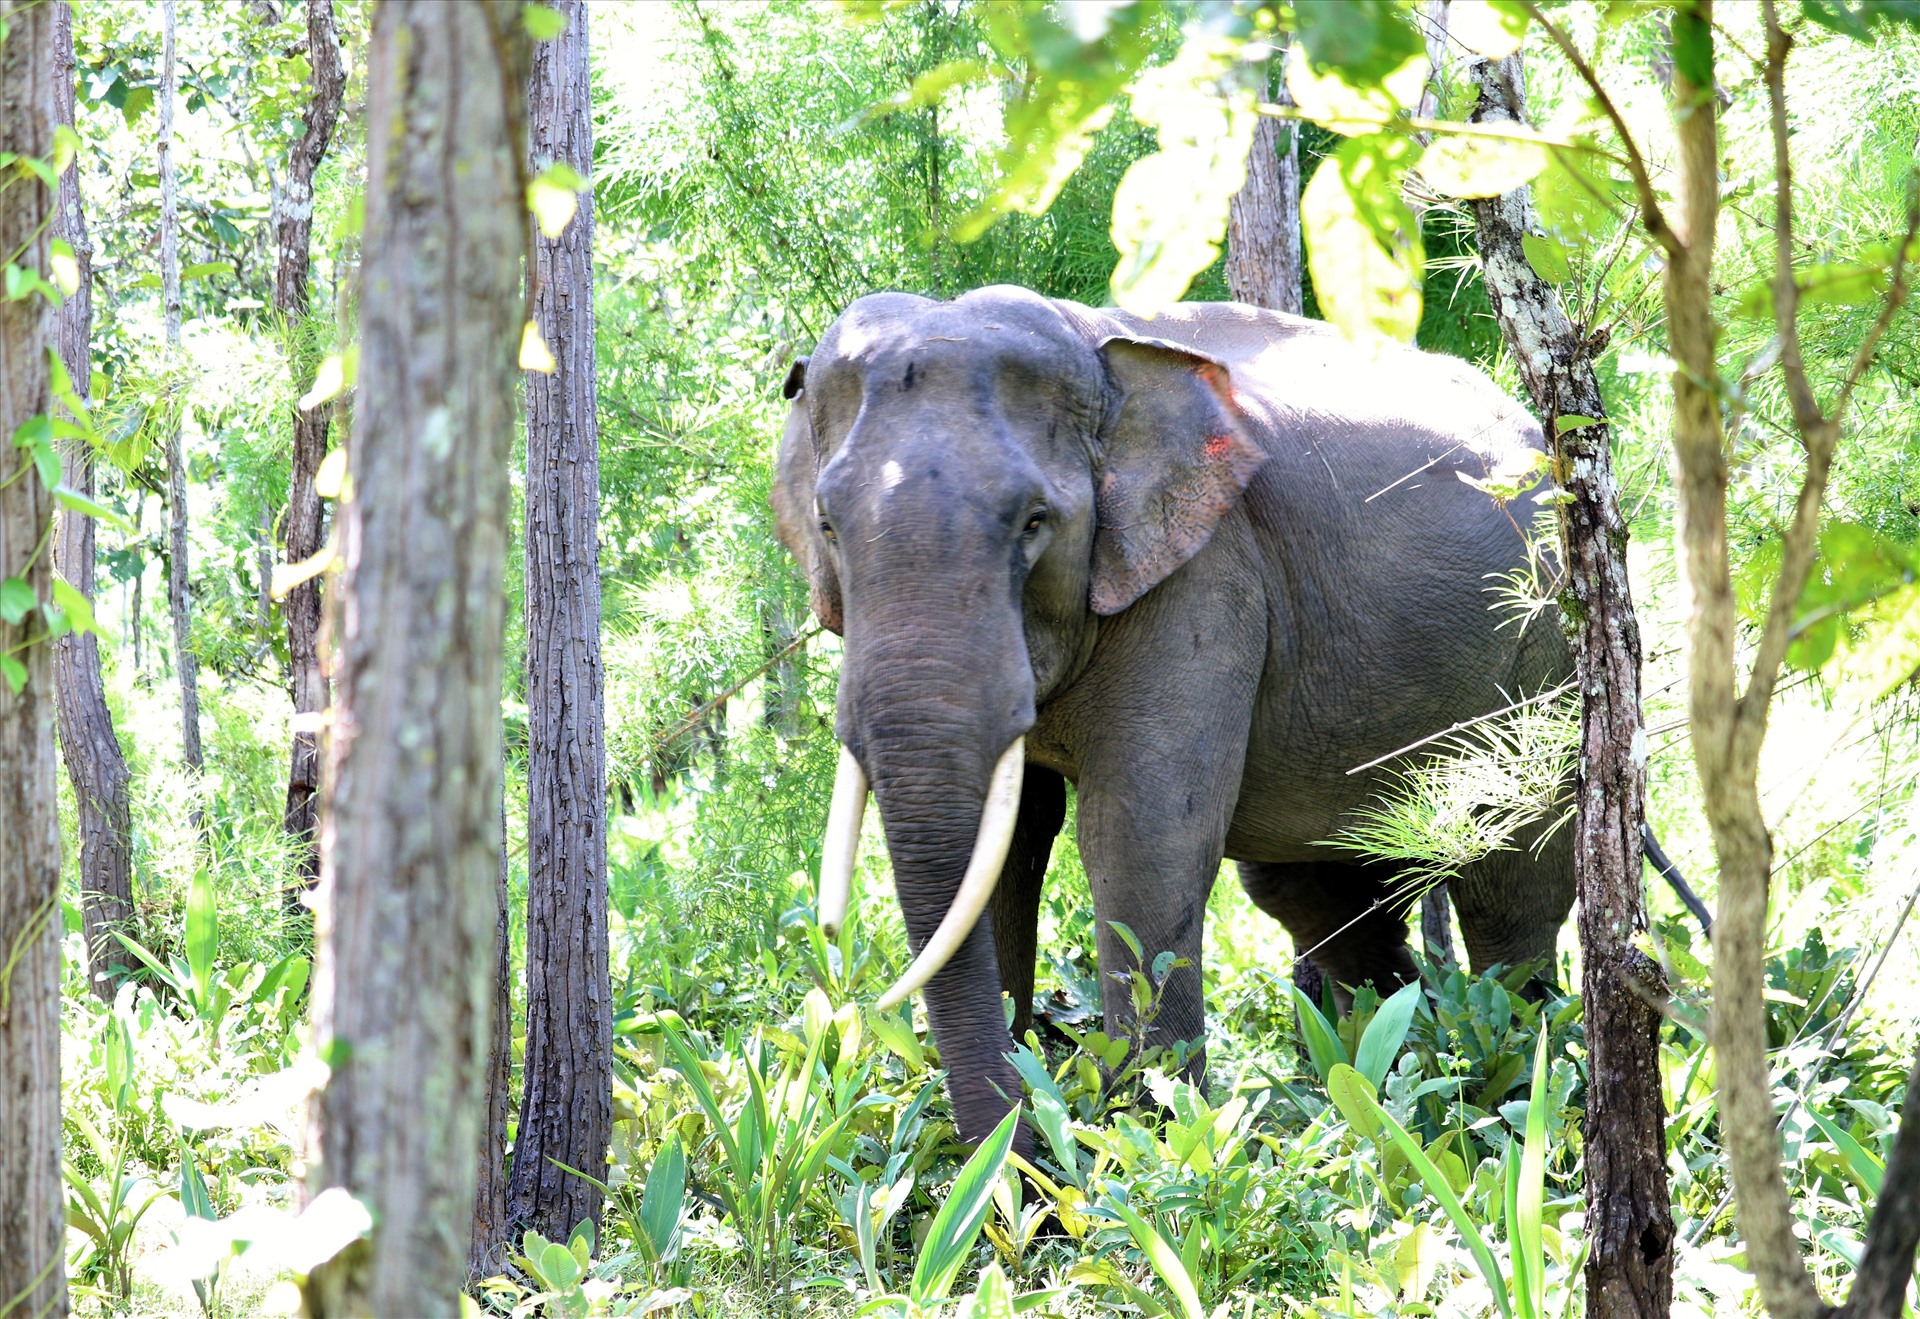 Khi voi nhà khi được đưa vào Vườn quốc gia Yok Đôn, chúng được tự do di chuyển, hoạt động theo bản năng tự nhiên. Voi khi vào đây thì không bị xích chân theo kiểu truyền thống của người dân địa phương nên không bị cản trở nghỉ ngơi, đi lại, tìm kiếm thức ăn ưa thích... Ảnh: Phan Tuấn